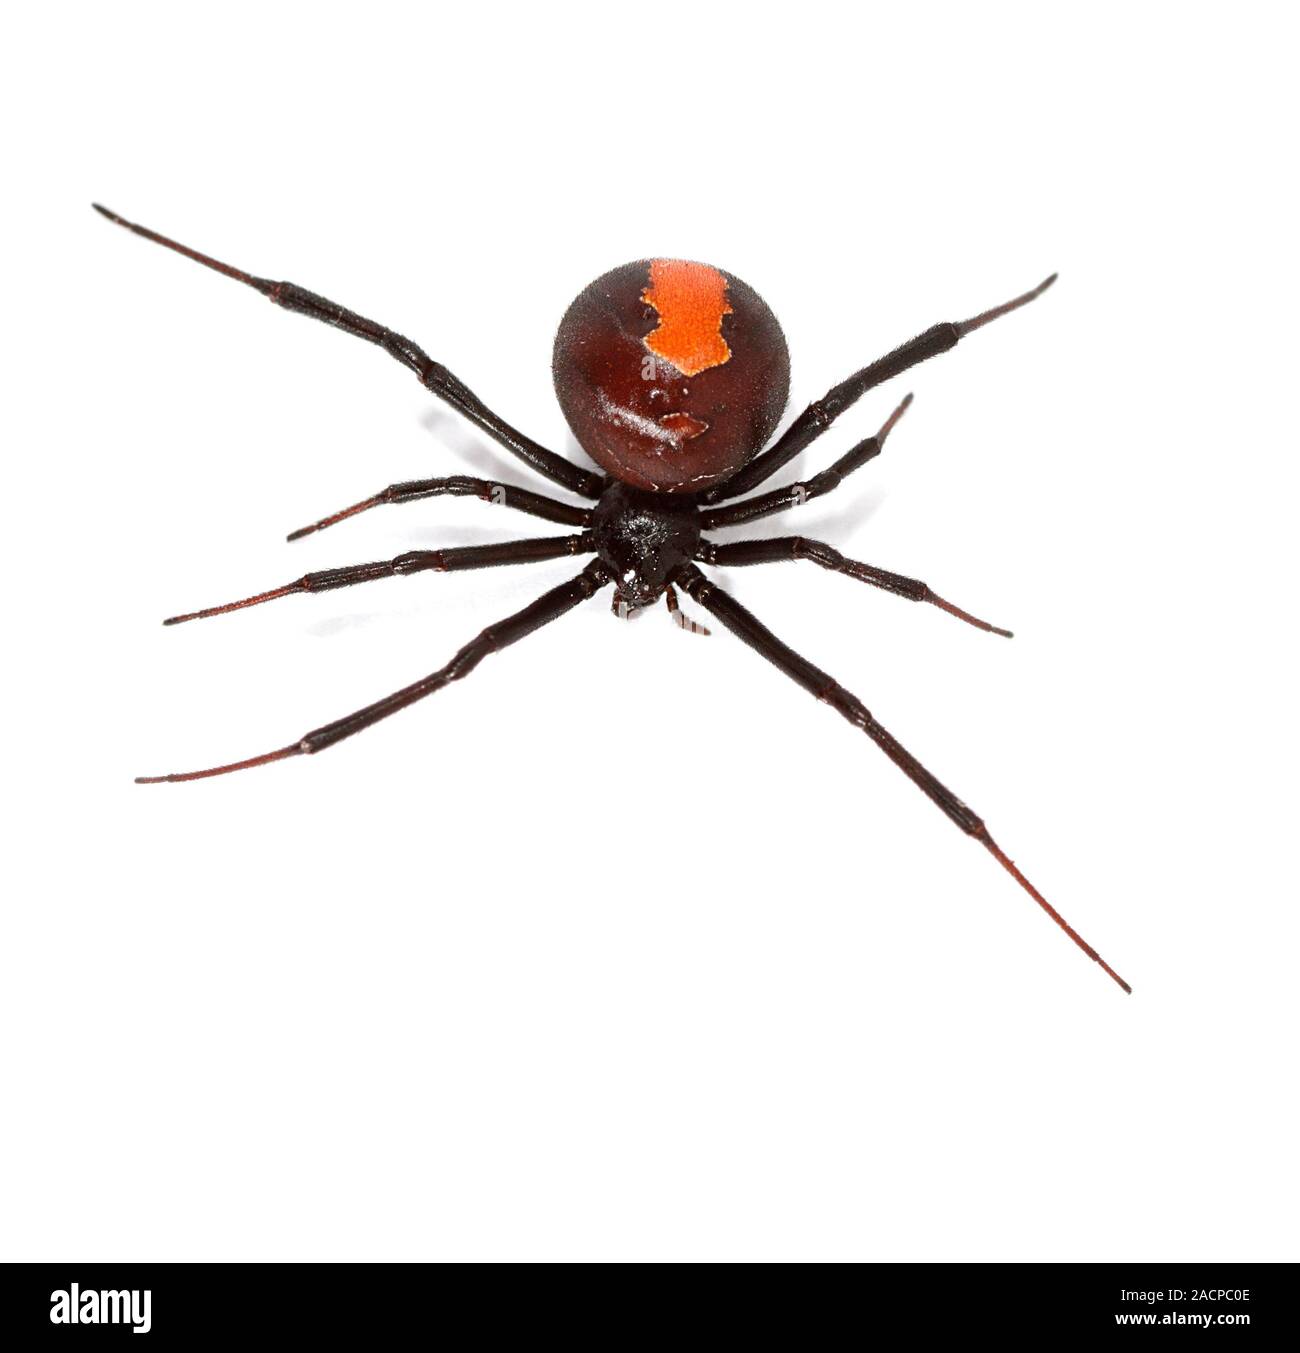 Redback Spider. Obere Seite der redback Spider (Latrodectus Hasselti).  Diese giftige Spinne ist endemisch in Australien und ist eine der  gefährlichsten s Stockfotografie - Alamy